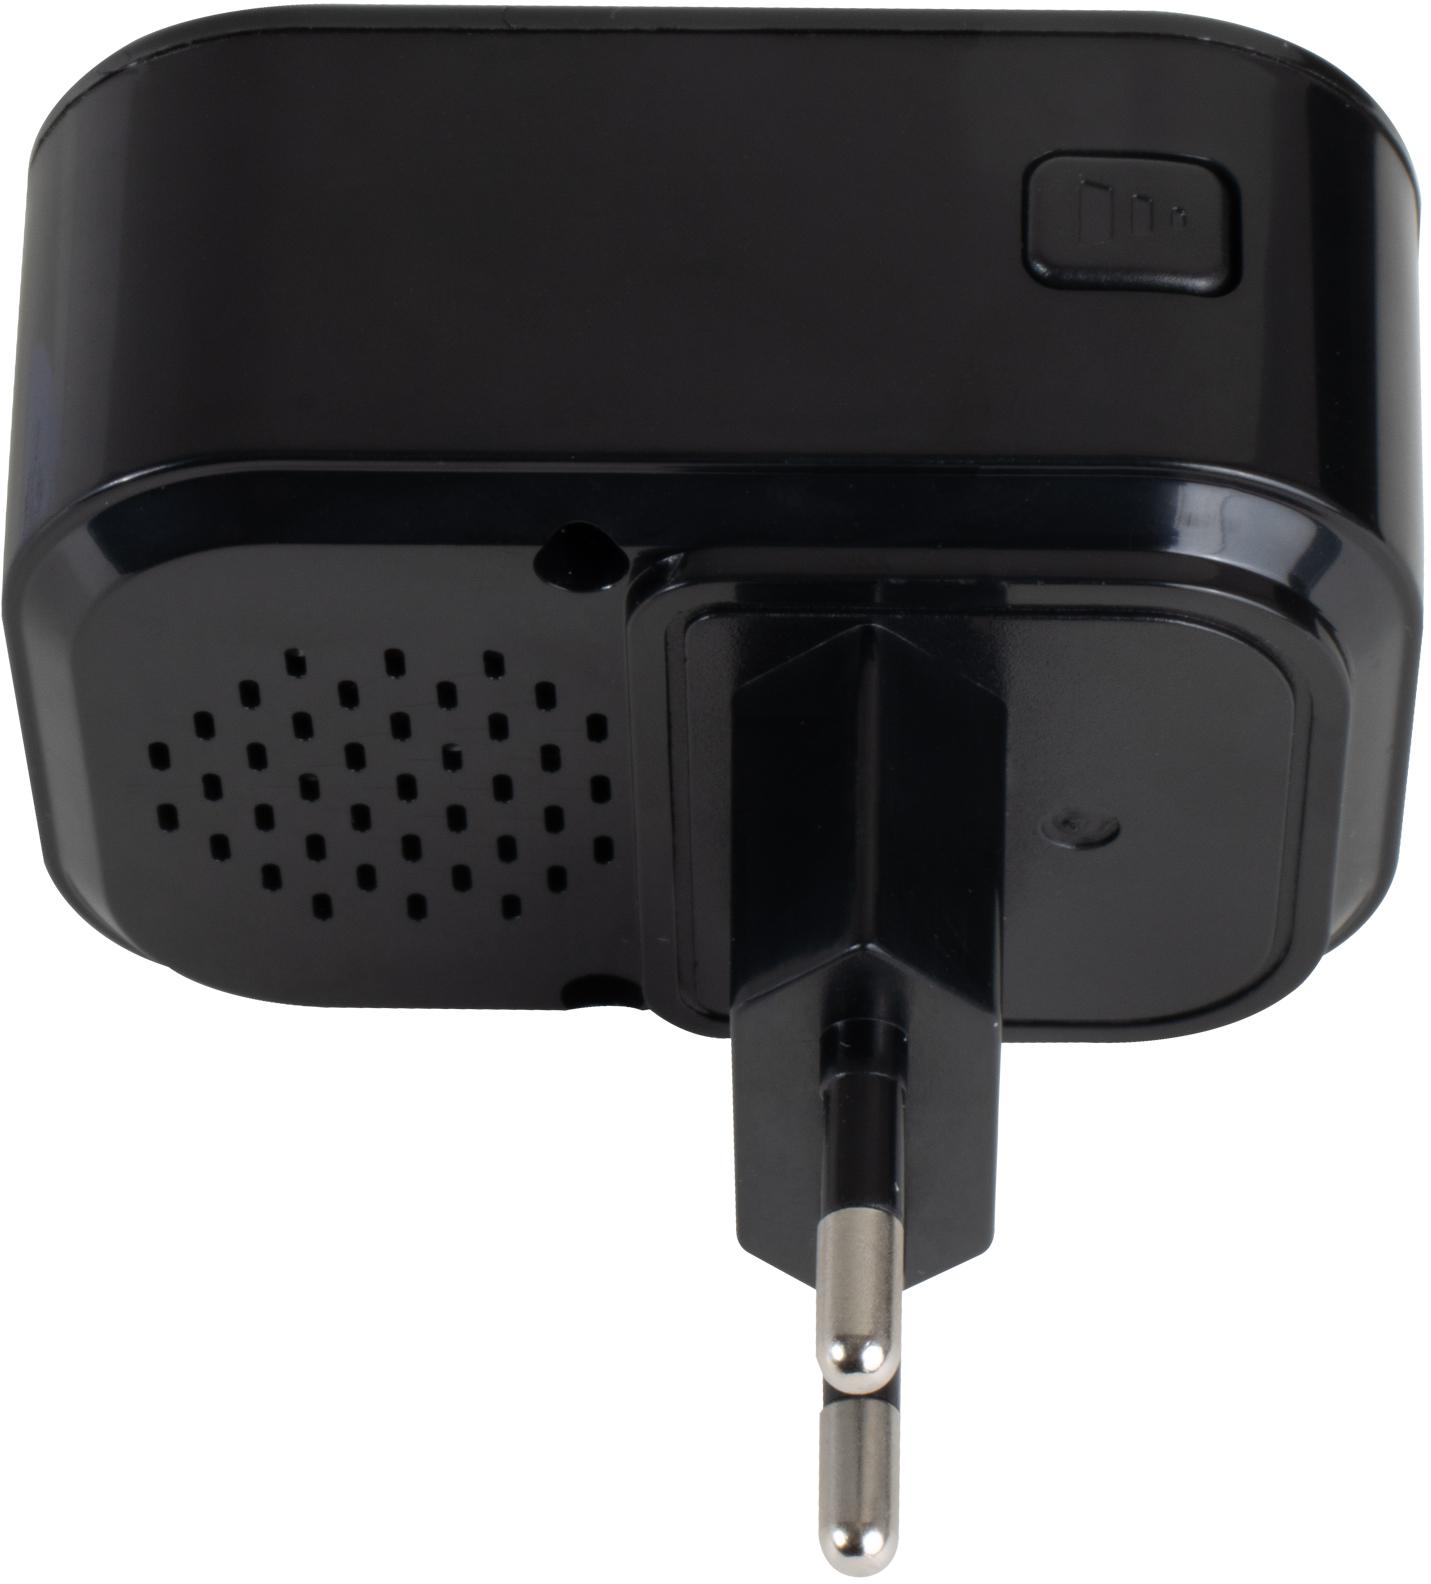 Bezprzewodowy dzwonek z kamerą Wi-Fi, Tuya EasyCam EC-VDB2